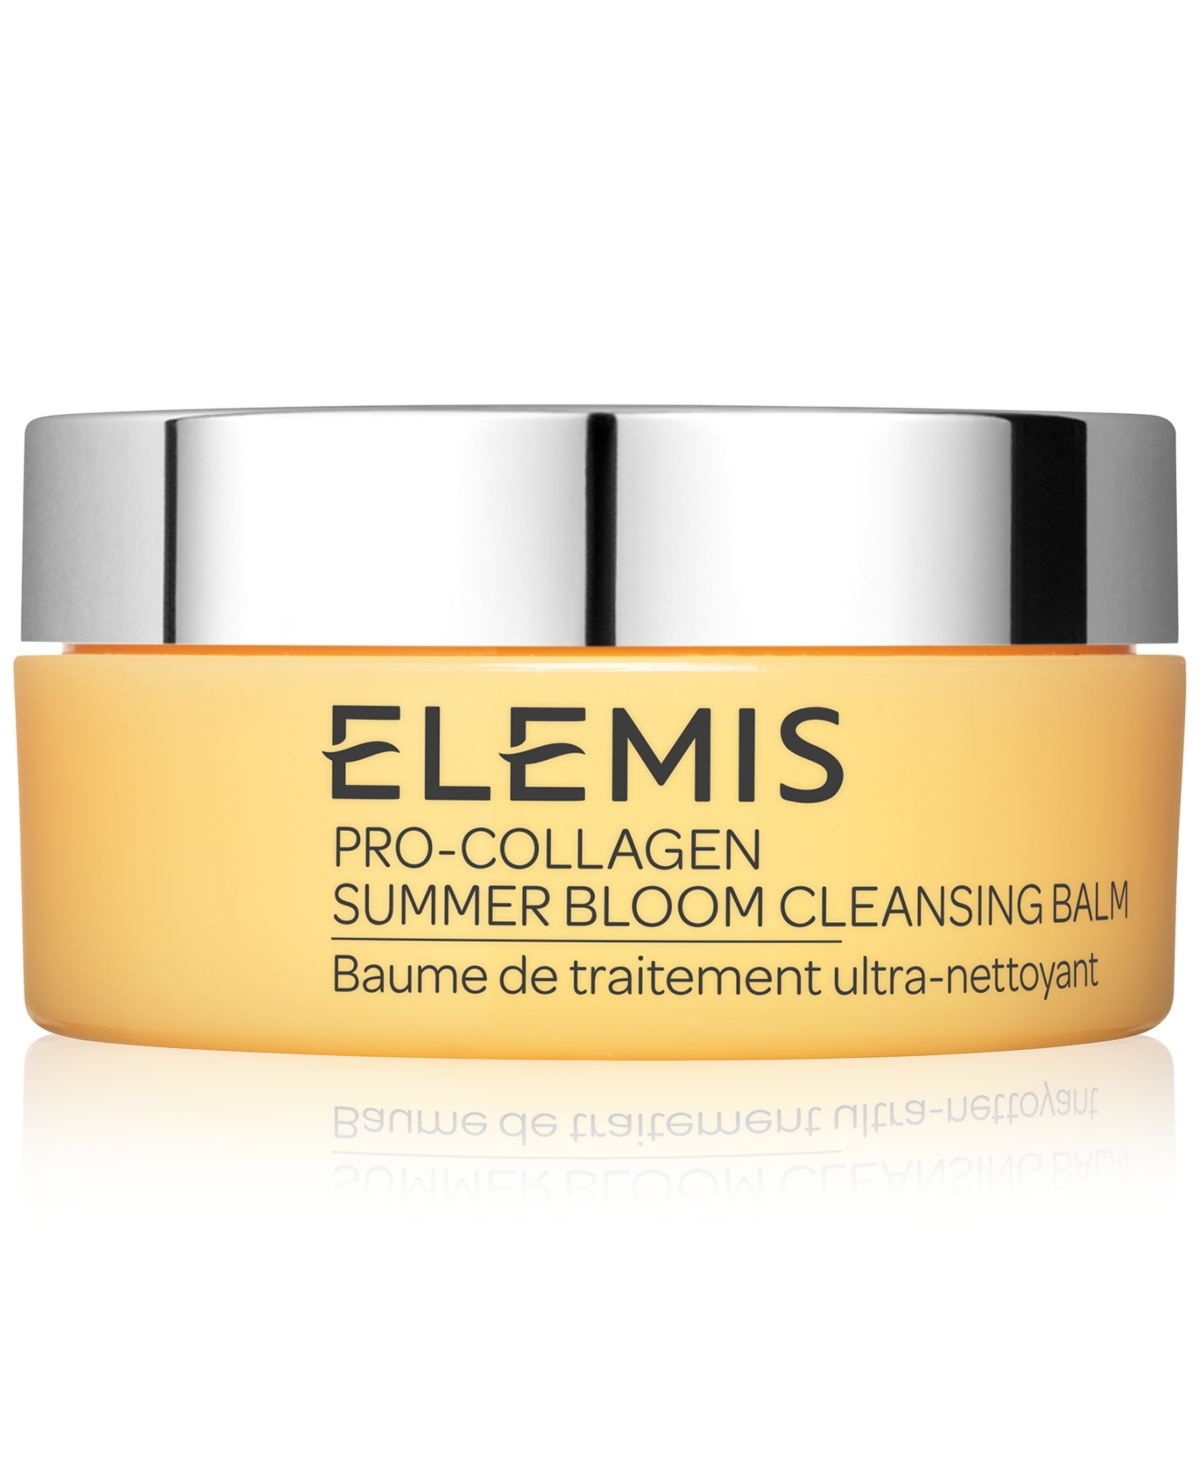 Shop Elemis Pro-collagen Summer Bloom Cleansing Balm